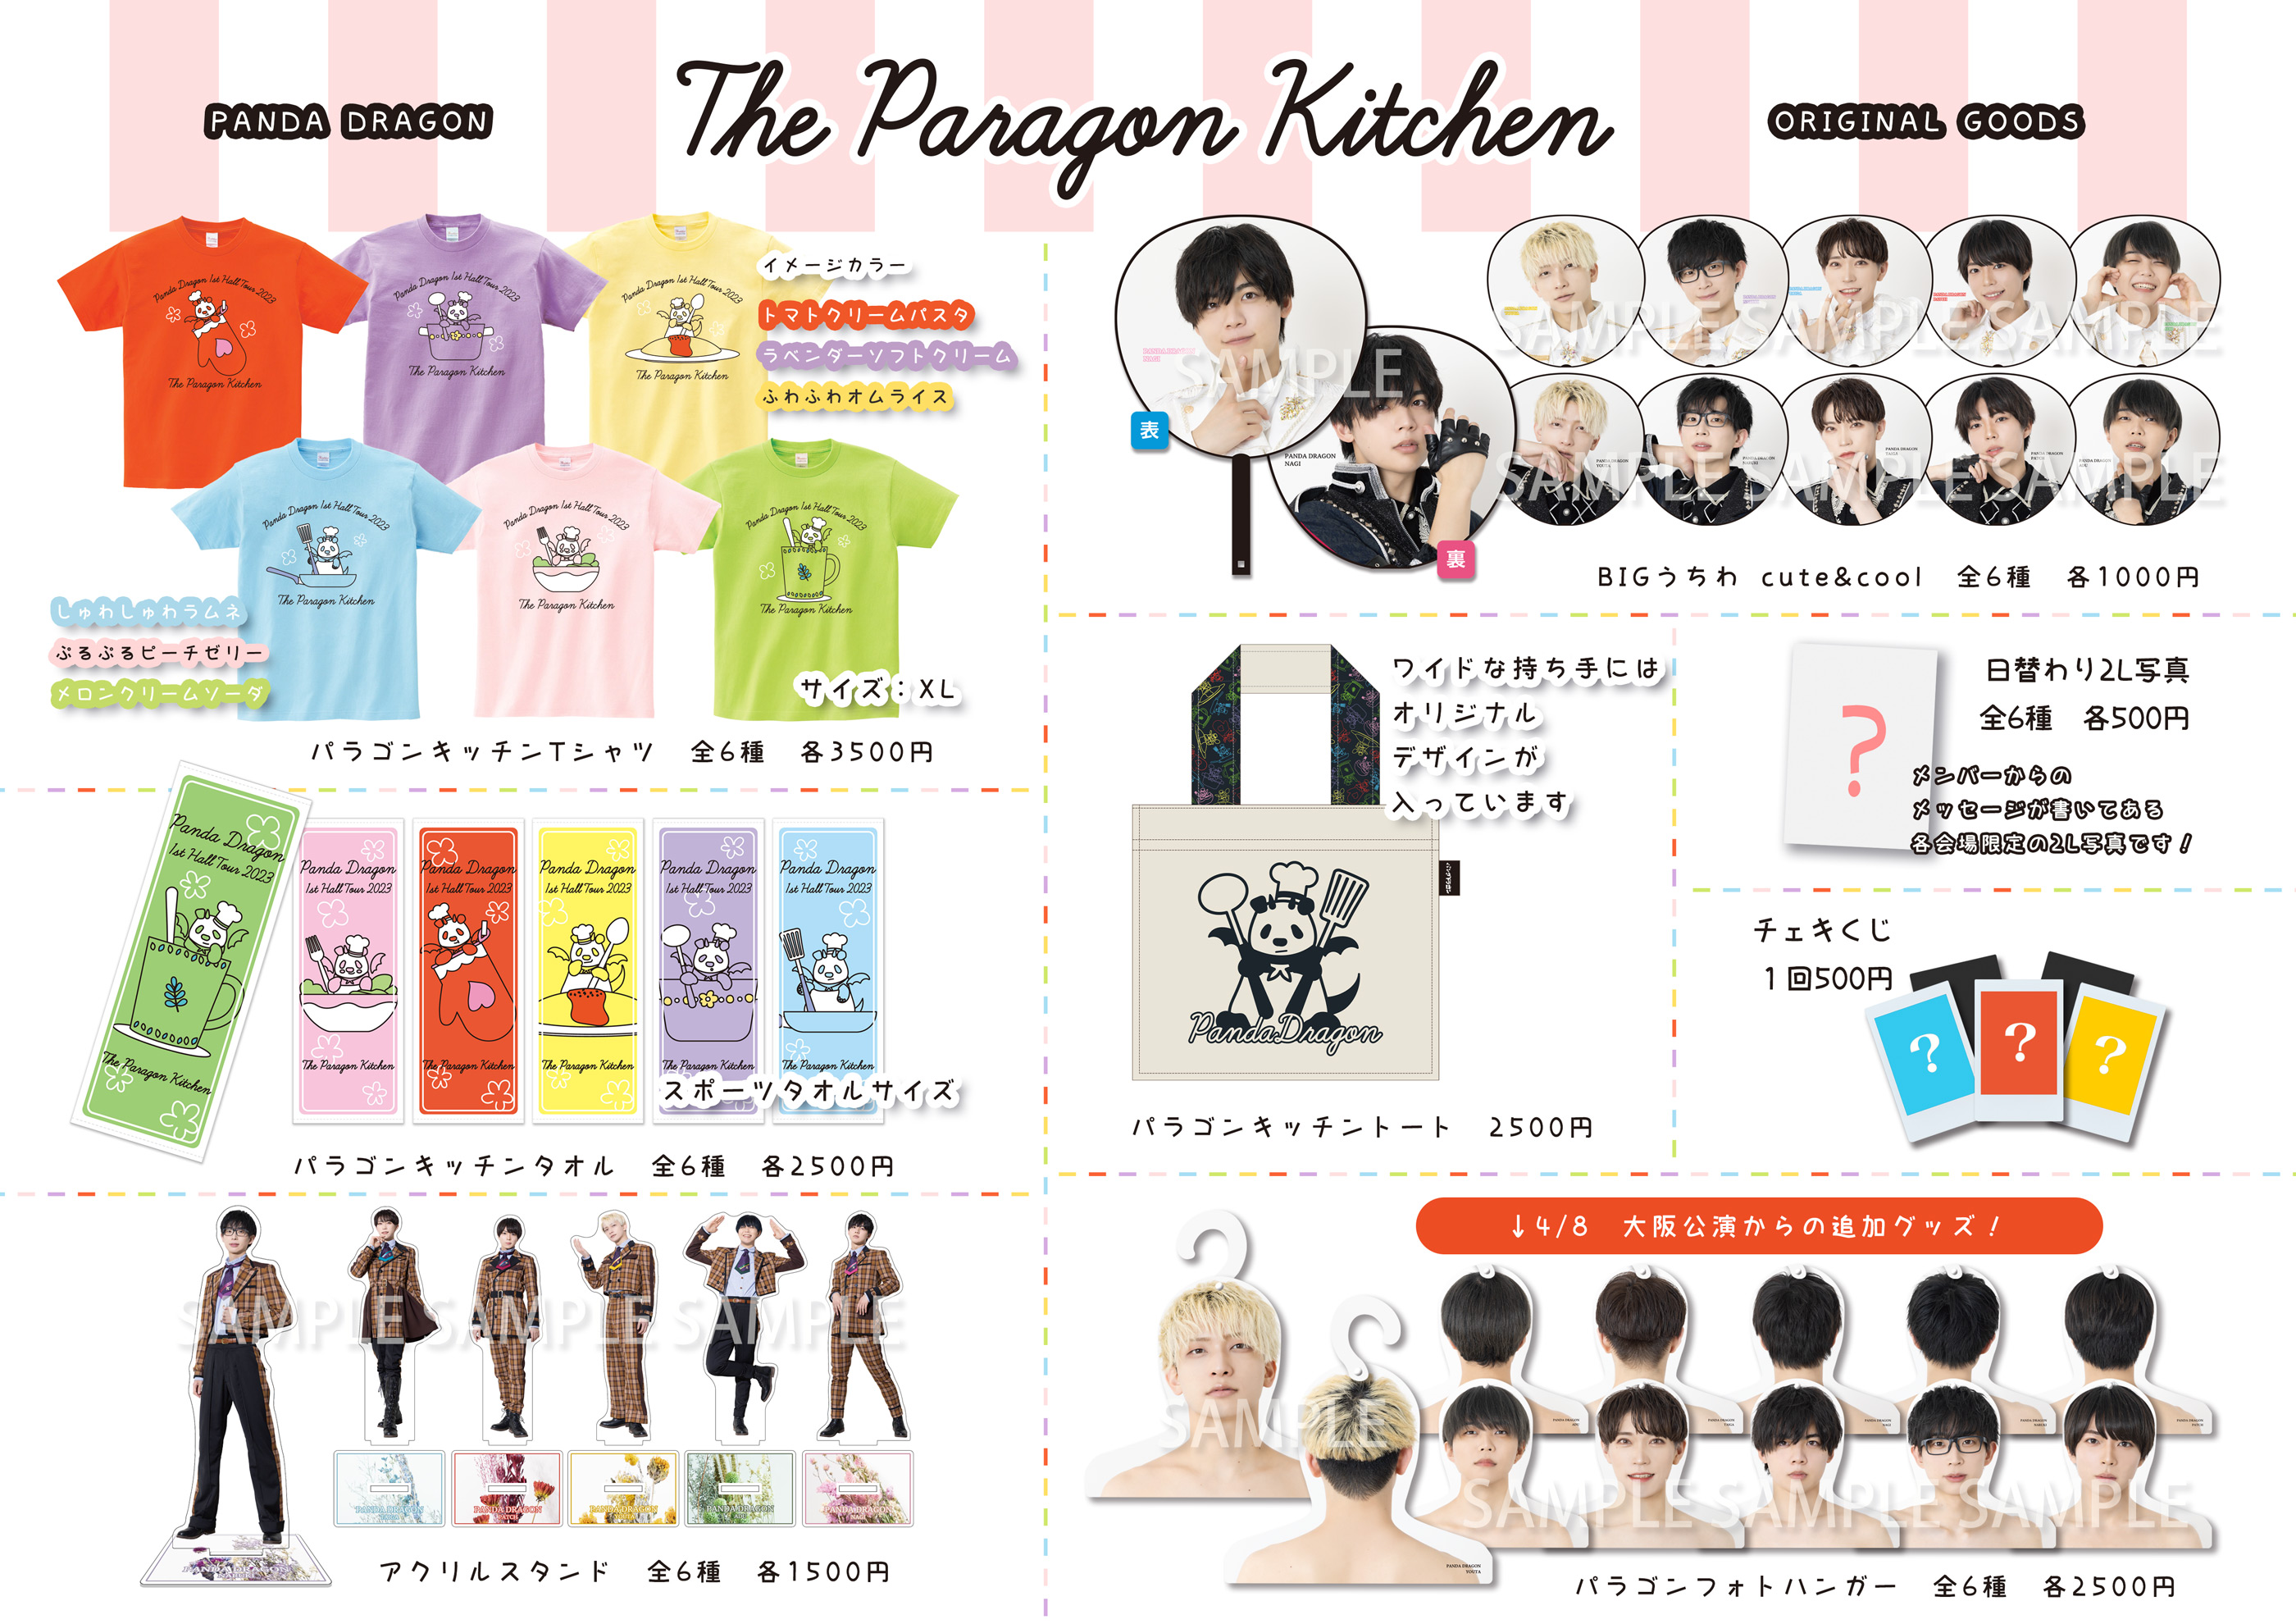 4月8日、4月9日 1st ホールツアー「THE PARAGON KITCHEN」大阪公演